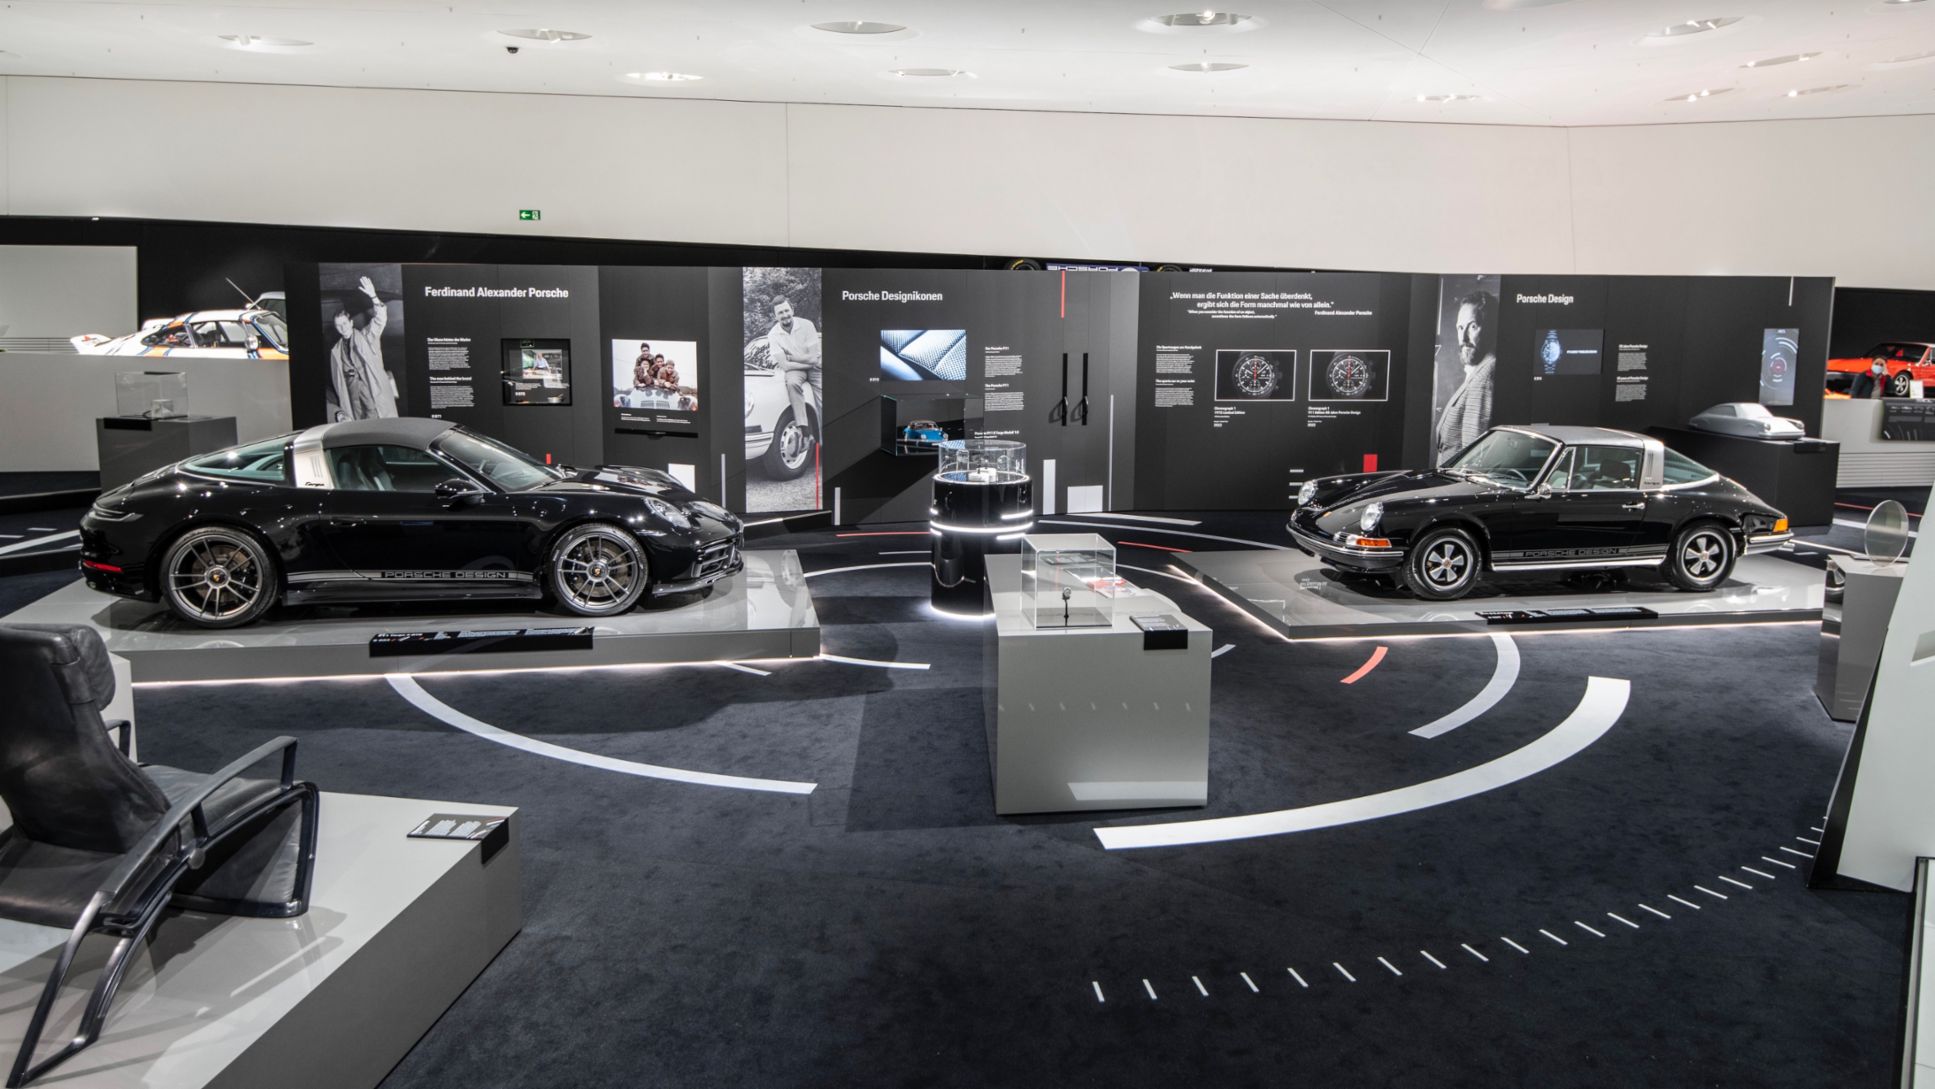 911 S 2.4 Targa, 911 Edition 50 years with Porsche Design, special exhibition 50 years with Porsche Design, Porsche Museum, 2022, Porsche AG